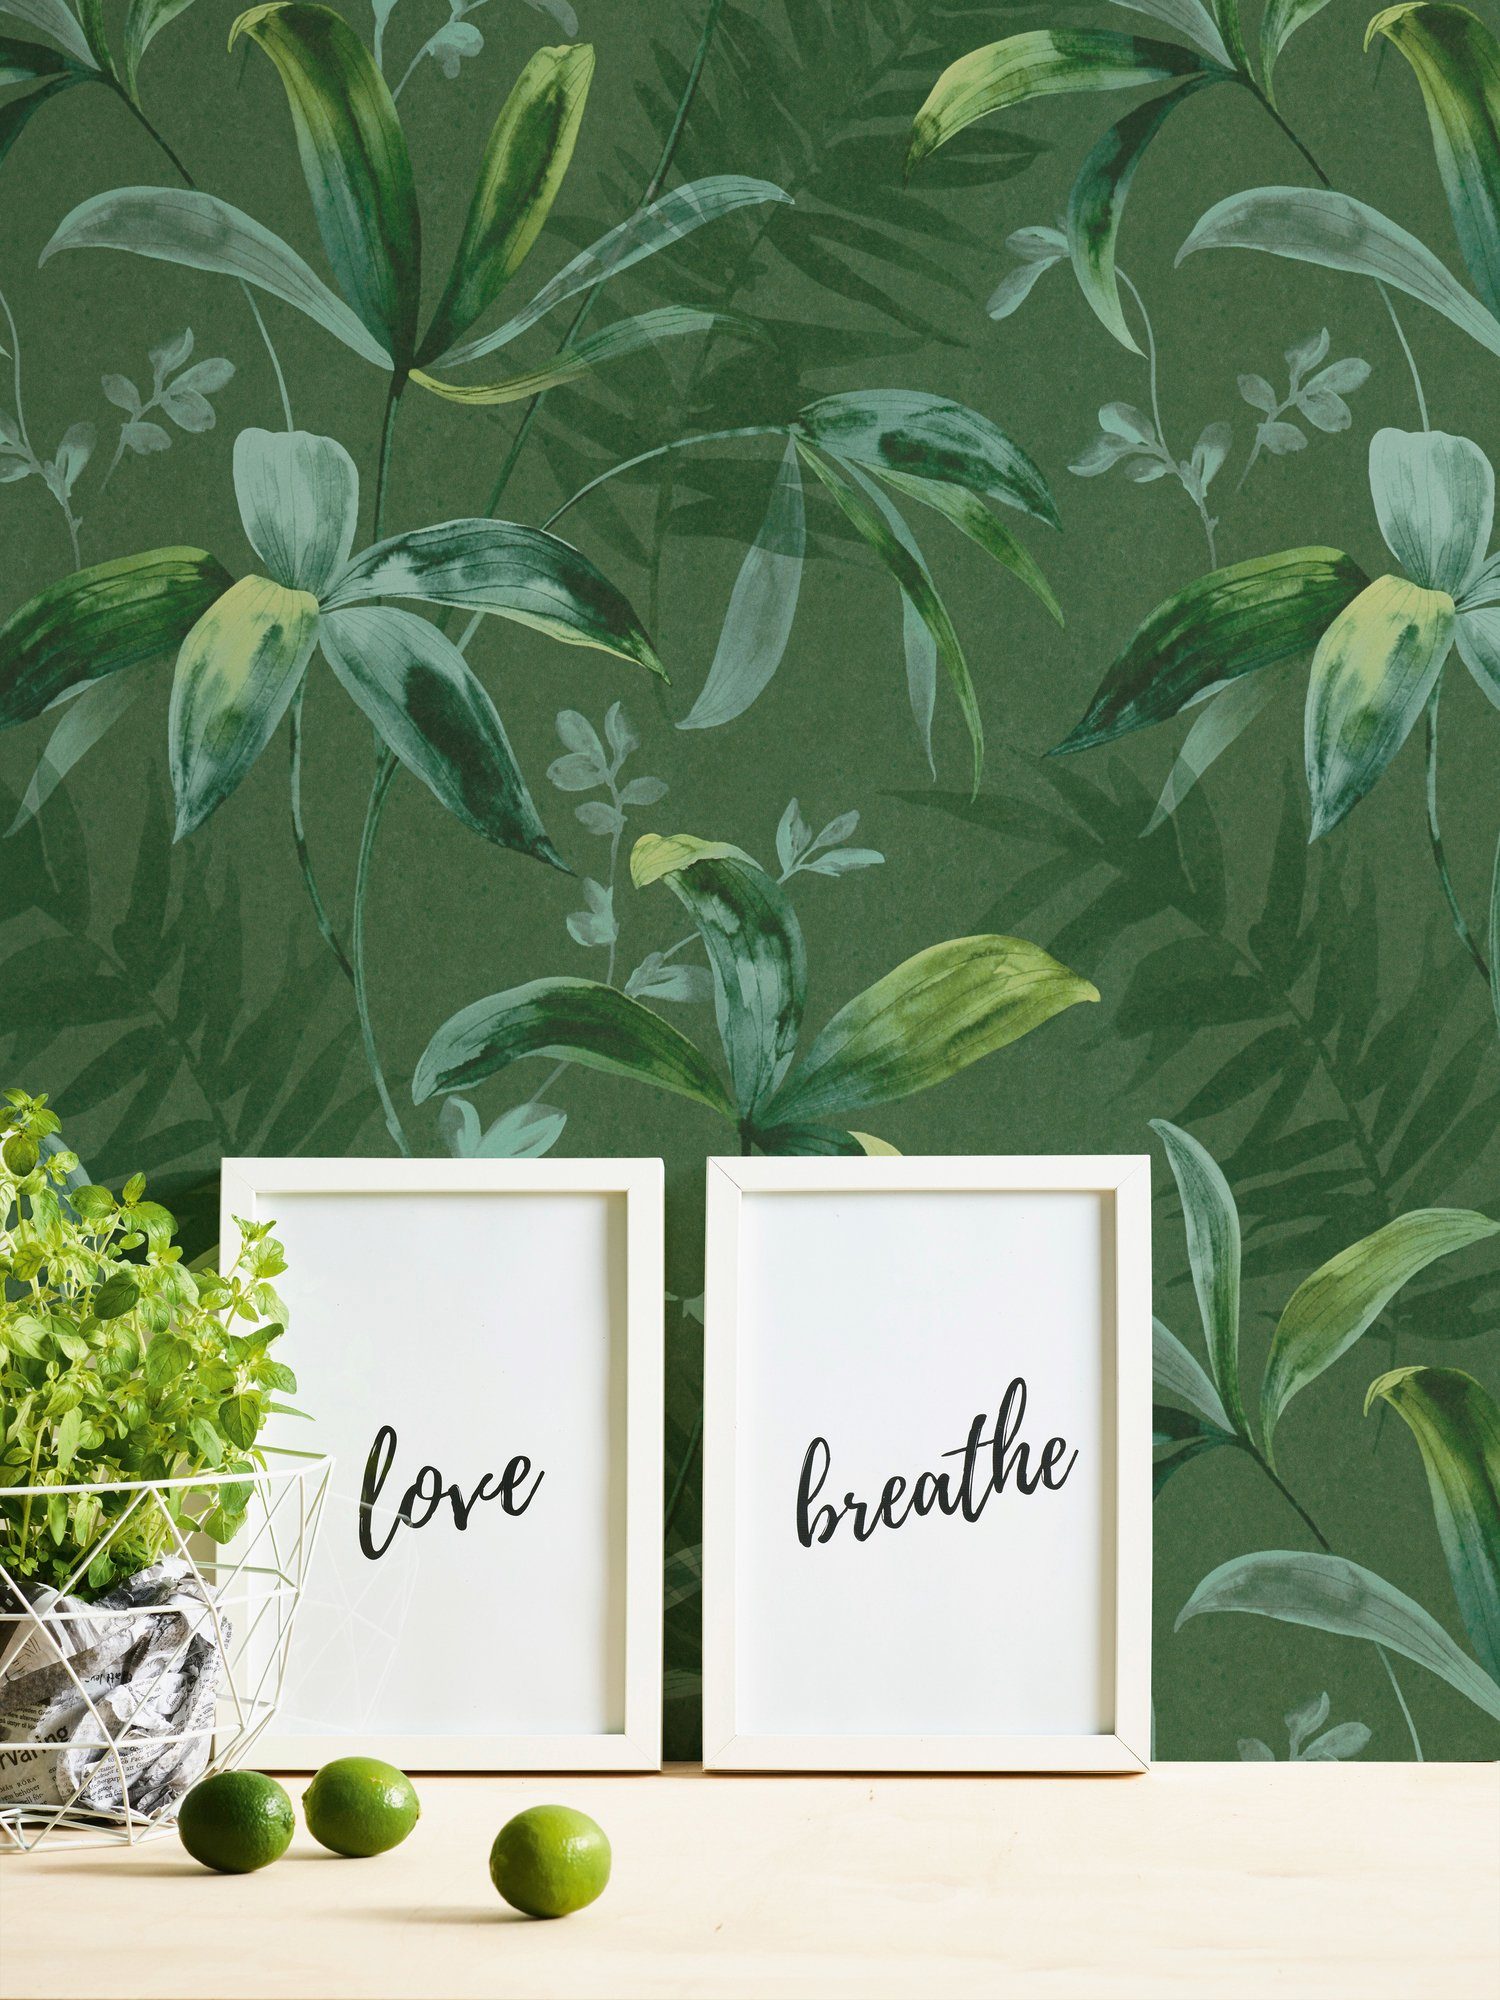 Architects Tapete Chic, Création grün Paper Jungle Dschungel Vliestapete floral, Palmentapete tropisch, A.S. botanisch, glatt,